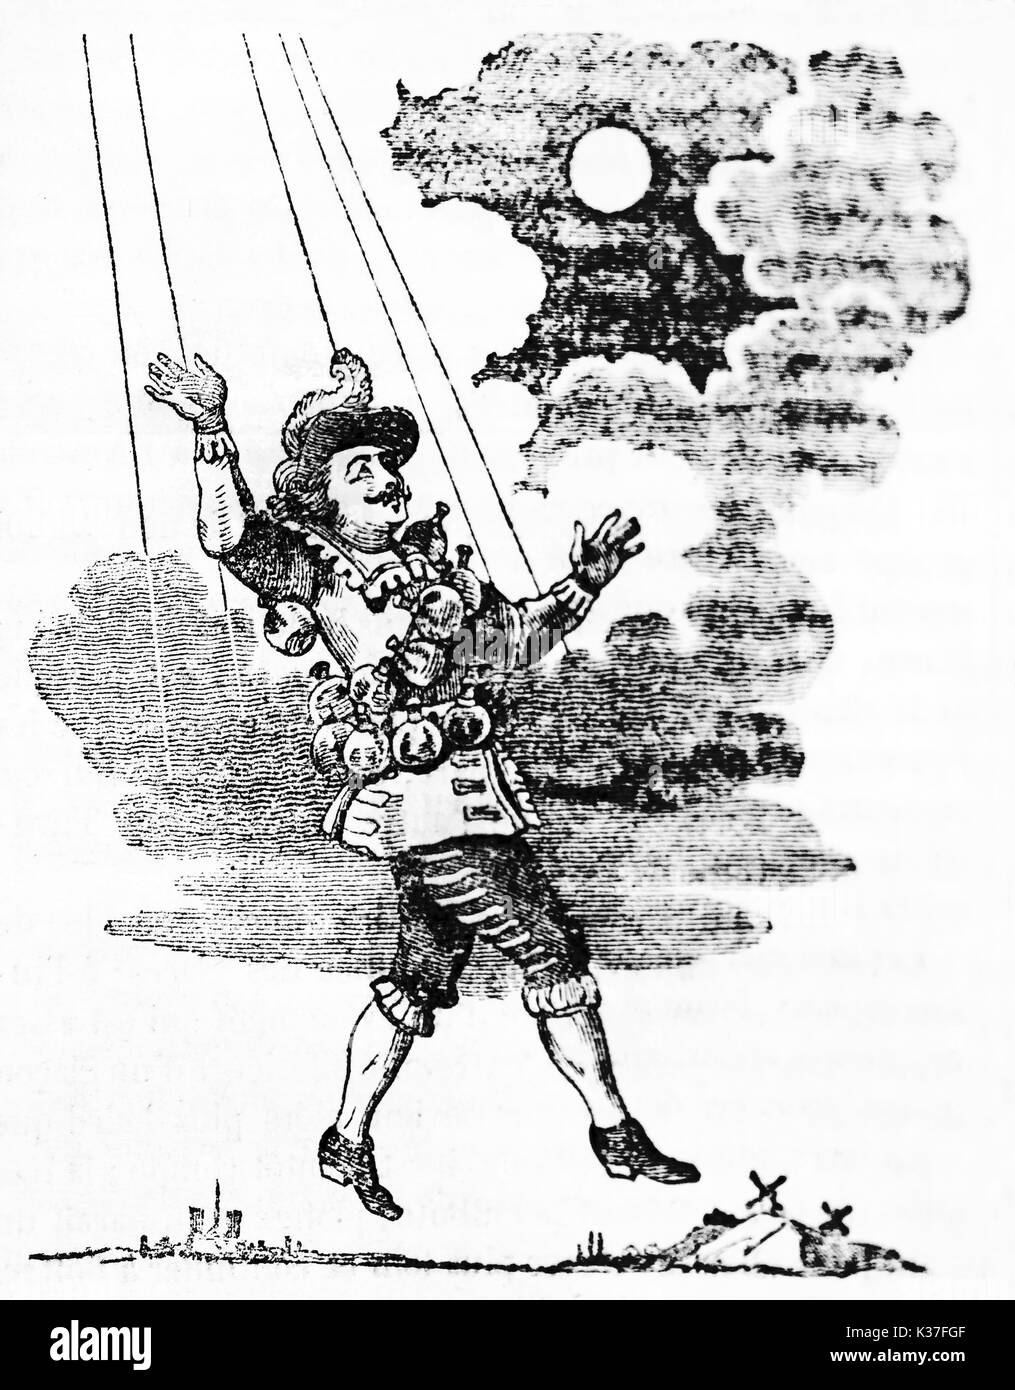 Cyrano de Bergerac semblable à une marionnette d'atteindre la lune. Vieille Illustration d'auteur non identifié publié le magasin pittoresque Paris 1834 Banque D'Images